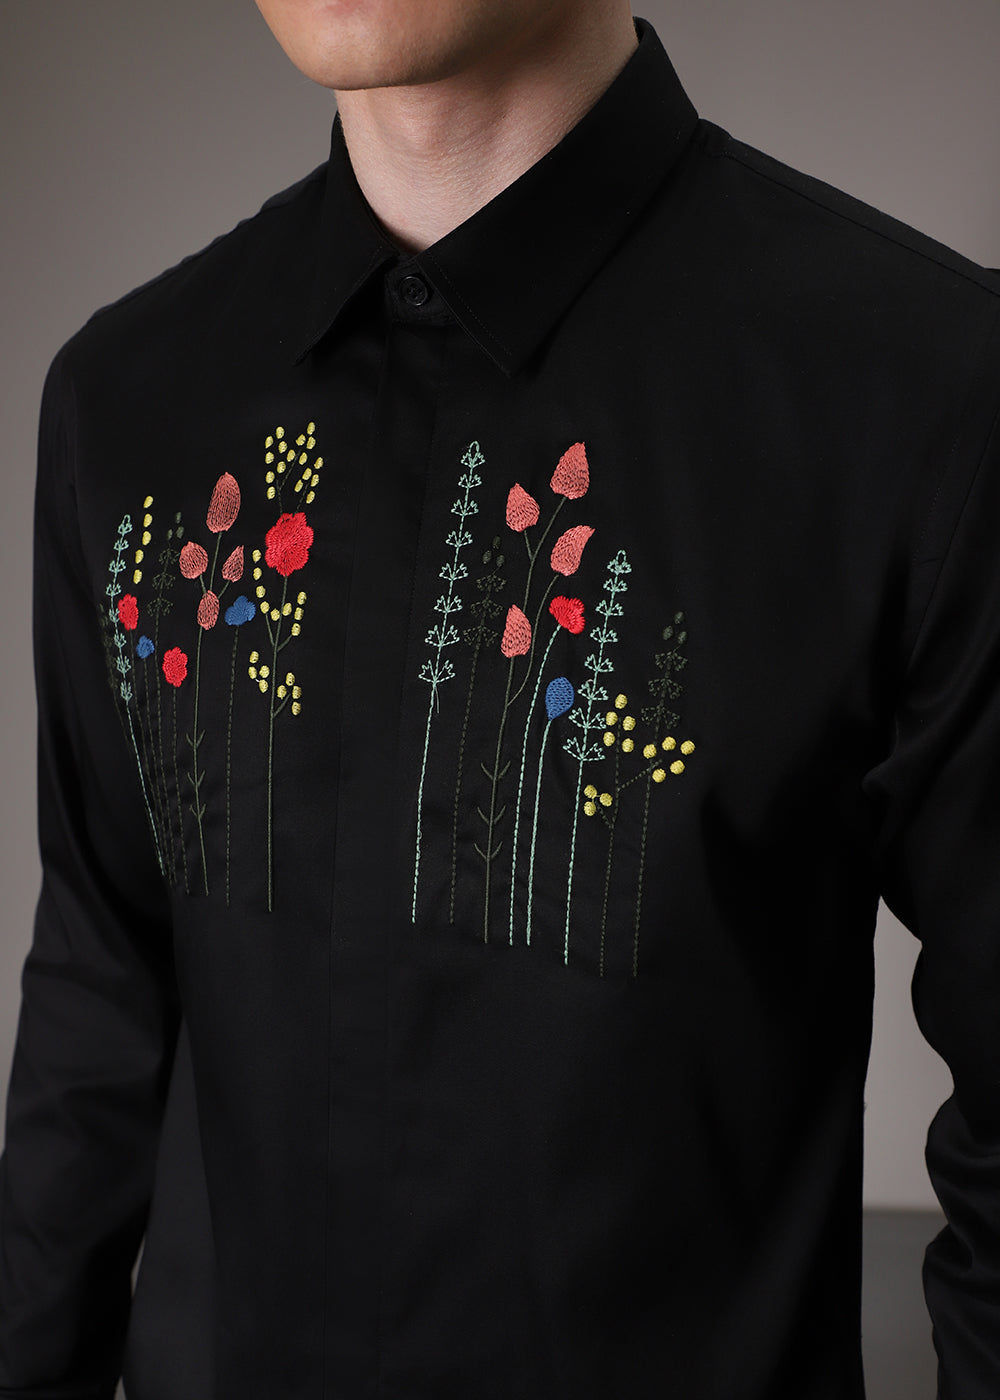 Floral Artistry Black Shirt